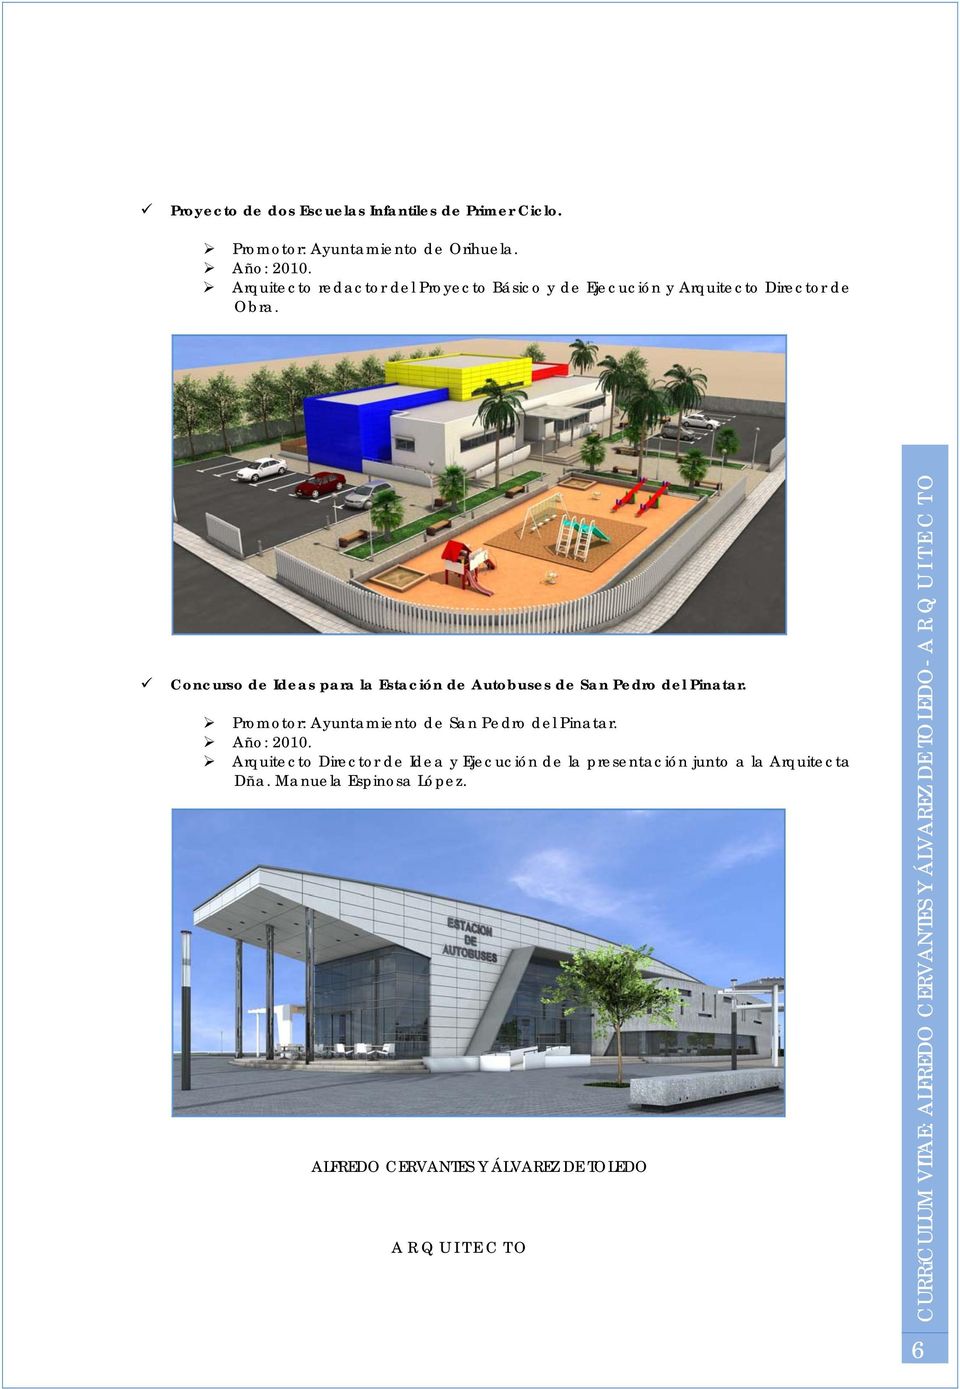 Concurso de Ideas para la Estación de Autobuses de San Pedro del Pinatar.